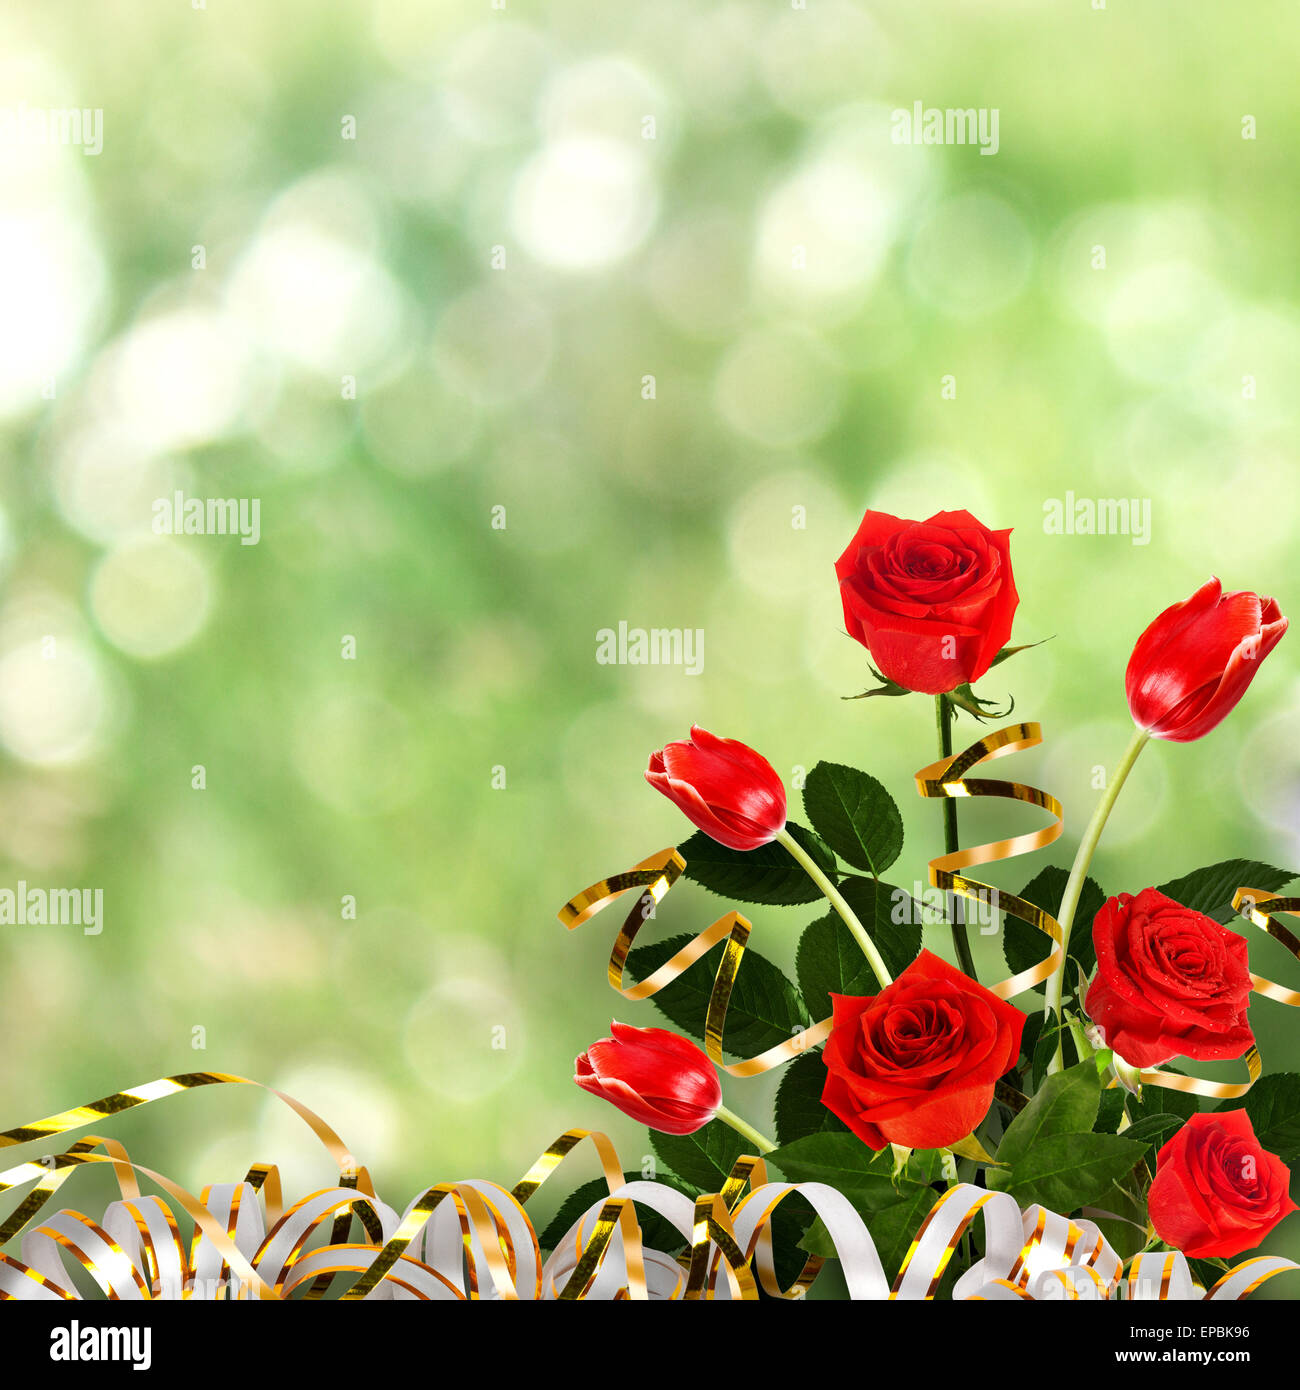 Floral gif immagini e fotografie stock ad alta risoluzione - Alamy